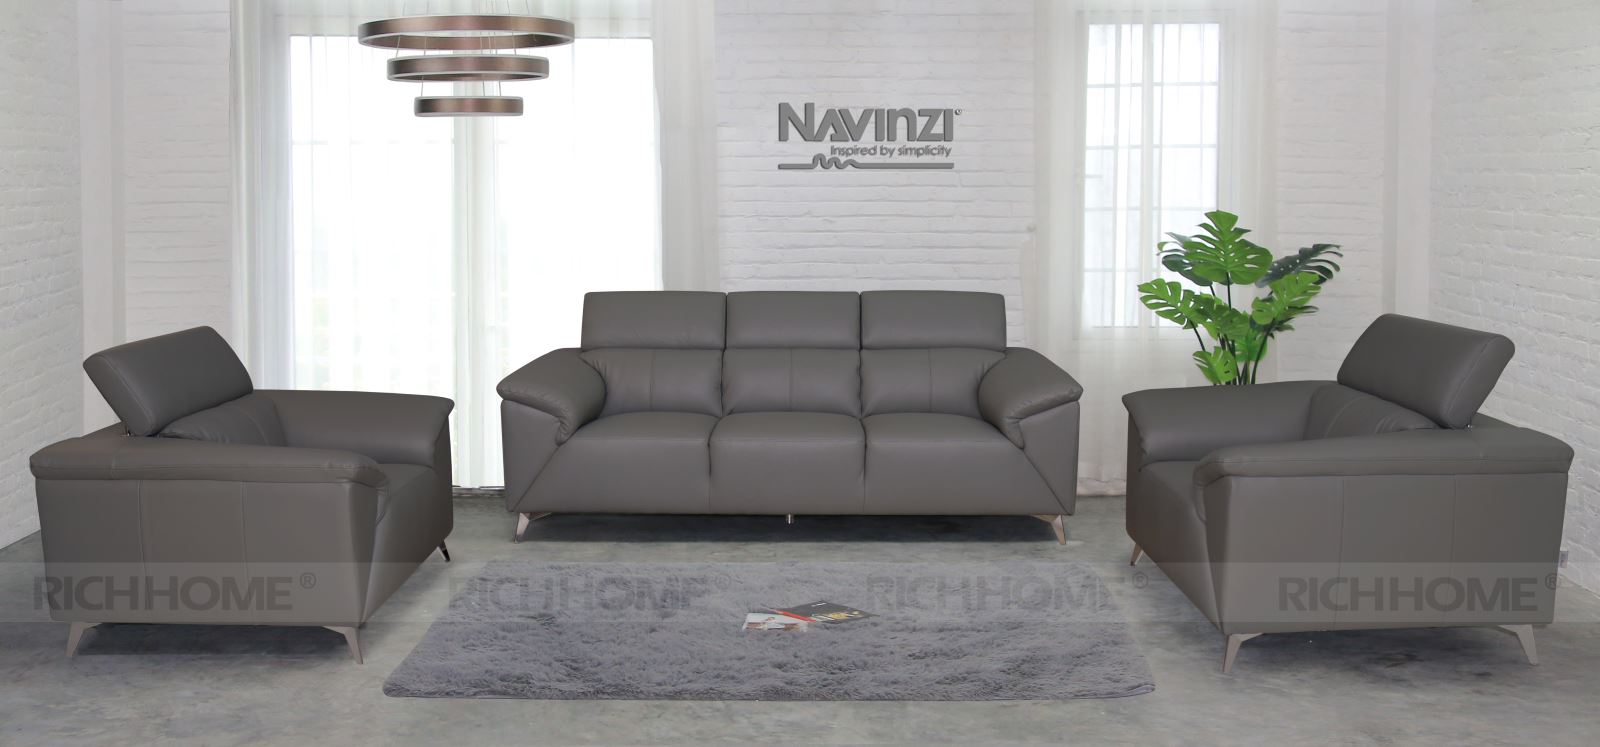 Tại sao hầu hết các mẫu sofa tiếp khách văn phòng đều được thiết kế đơn giản? - Ảnh 2